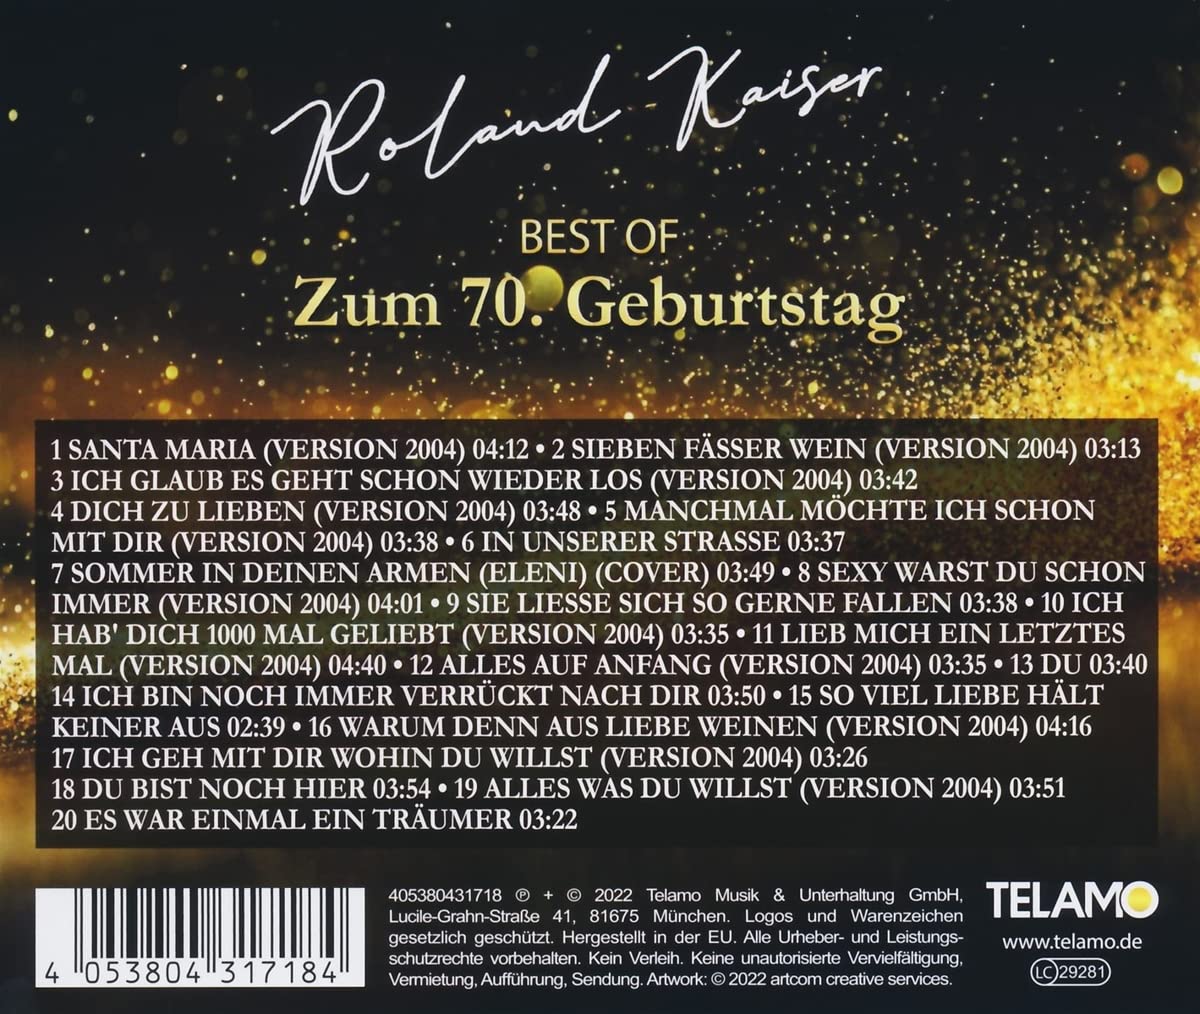 Roland Kaiser - Best Of: Zum 70. Geburtstag (2022) 